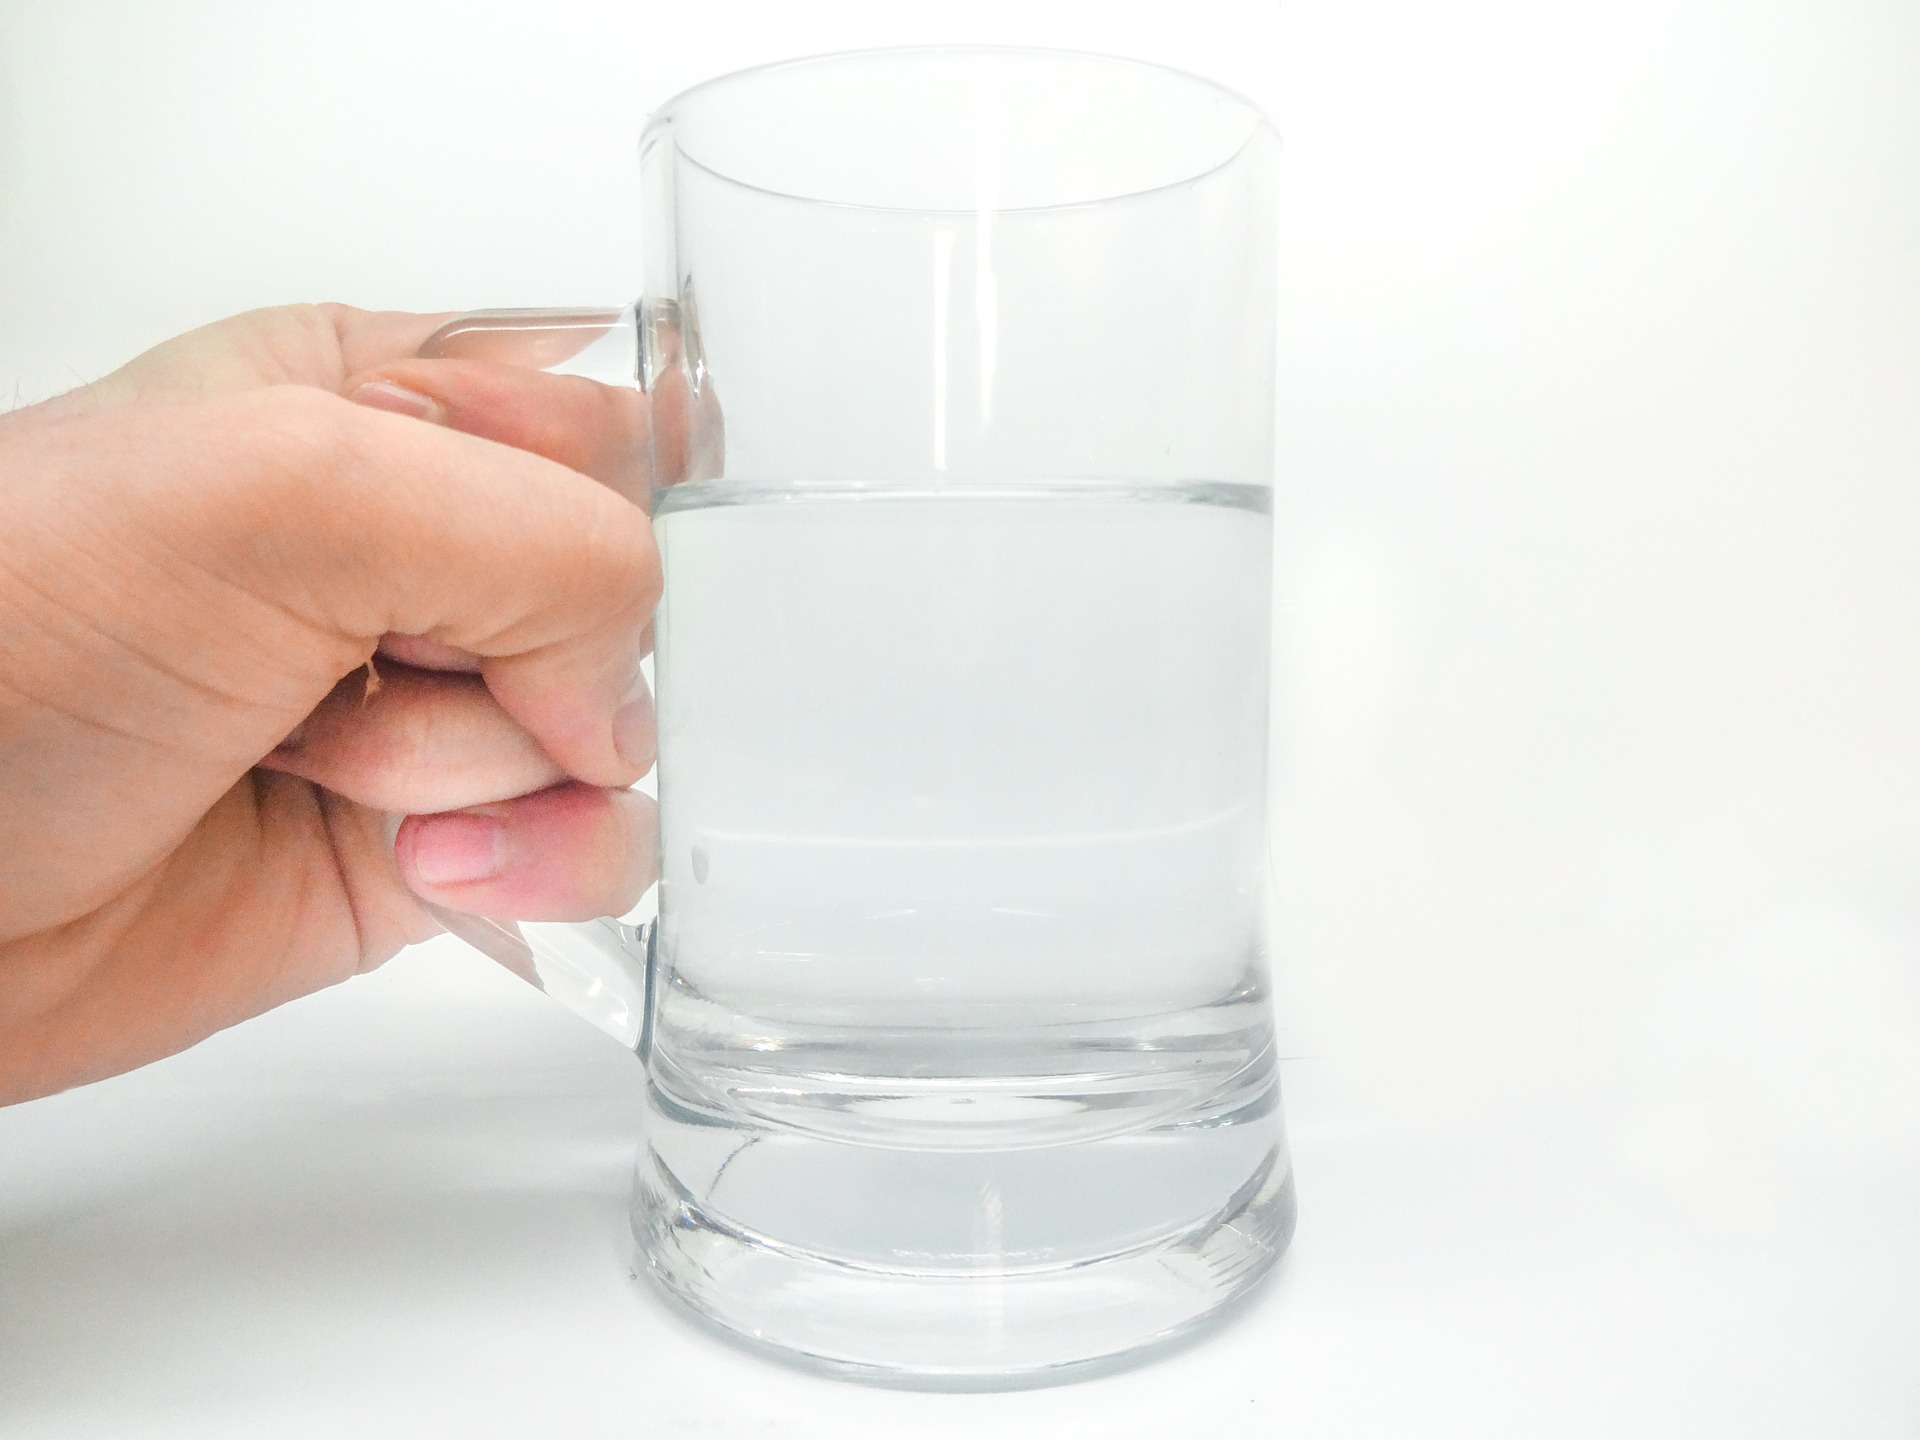 Menggunakan air yang tidak bersih untuk minum bisa menyebabkan sakit